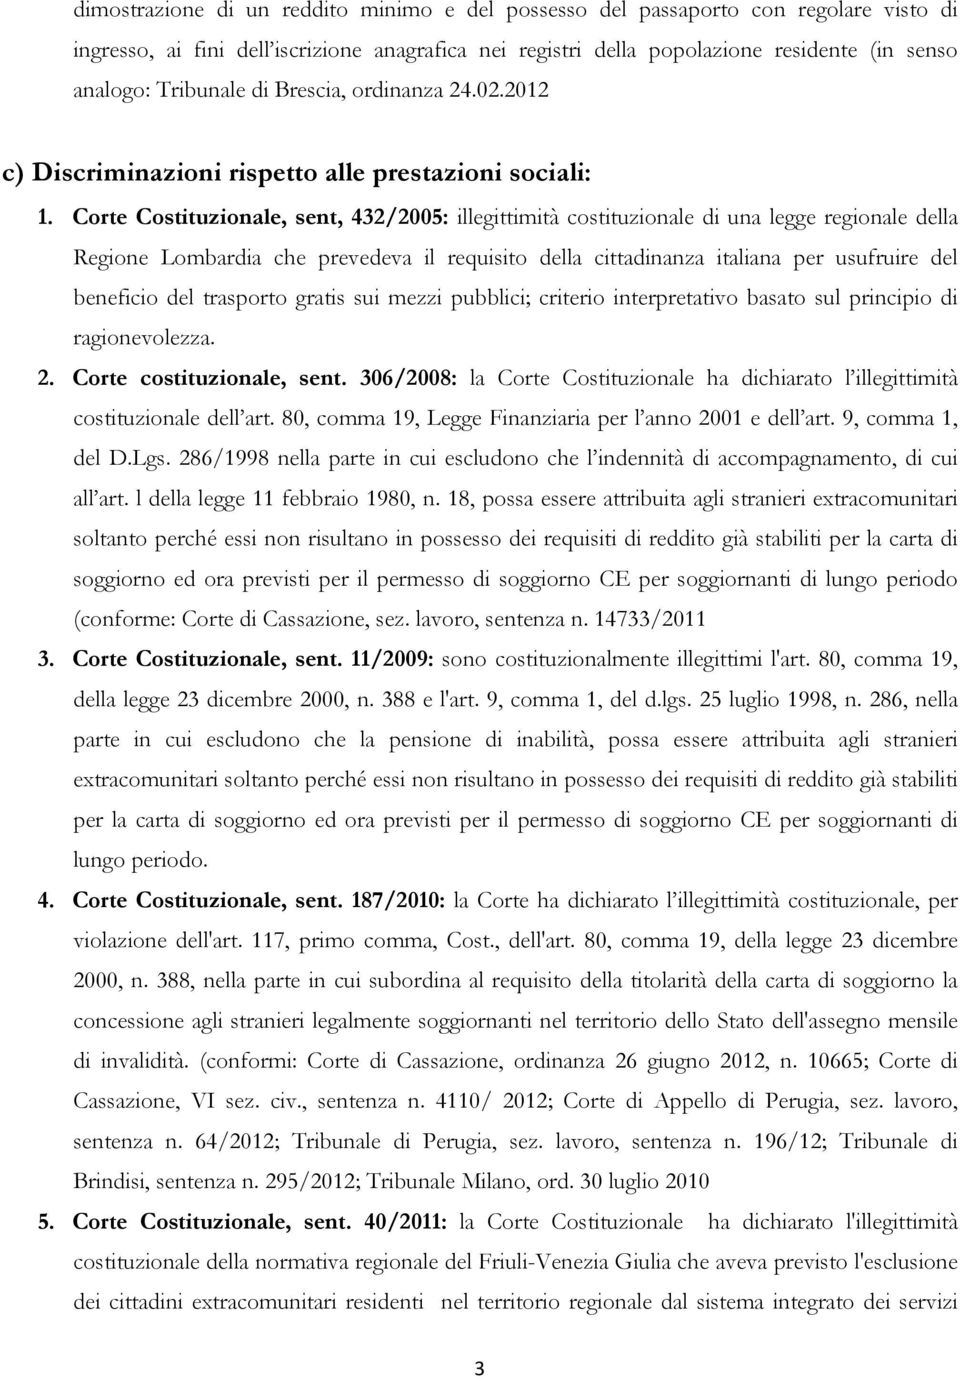 Corte Costituzionale, sent, 432/2005: illegittimità costituzionale di una legge regionale della Regione Lombardia che prevedeva il requisito della cittadinanza italiana per usufruire del beneficio